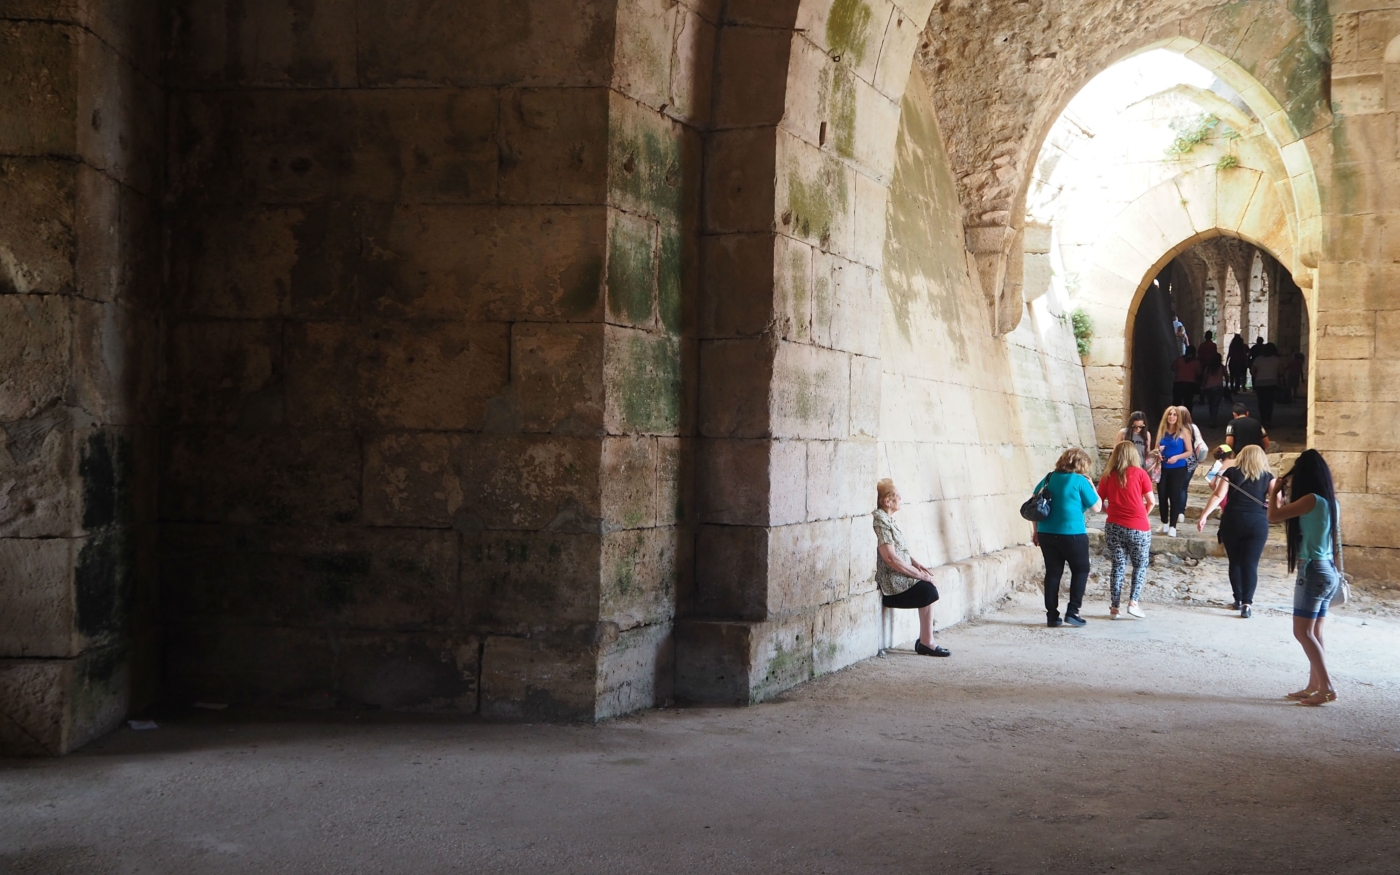 Les visiteurs syriens commencent à revenir au château, même si des pans entiers ont été endommagés pendant la guerre (MEE/Tom Westcott)